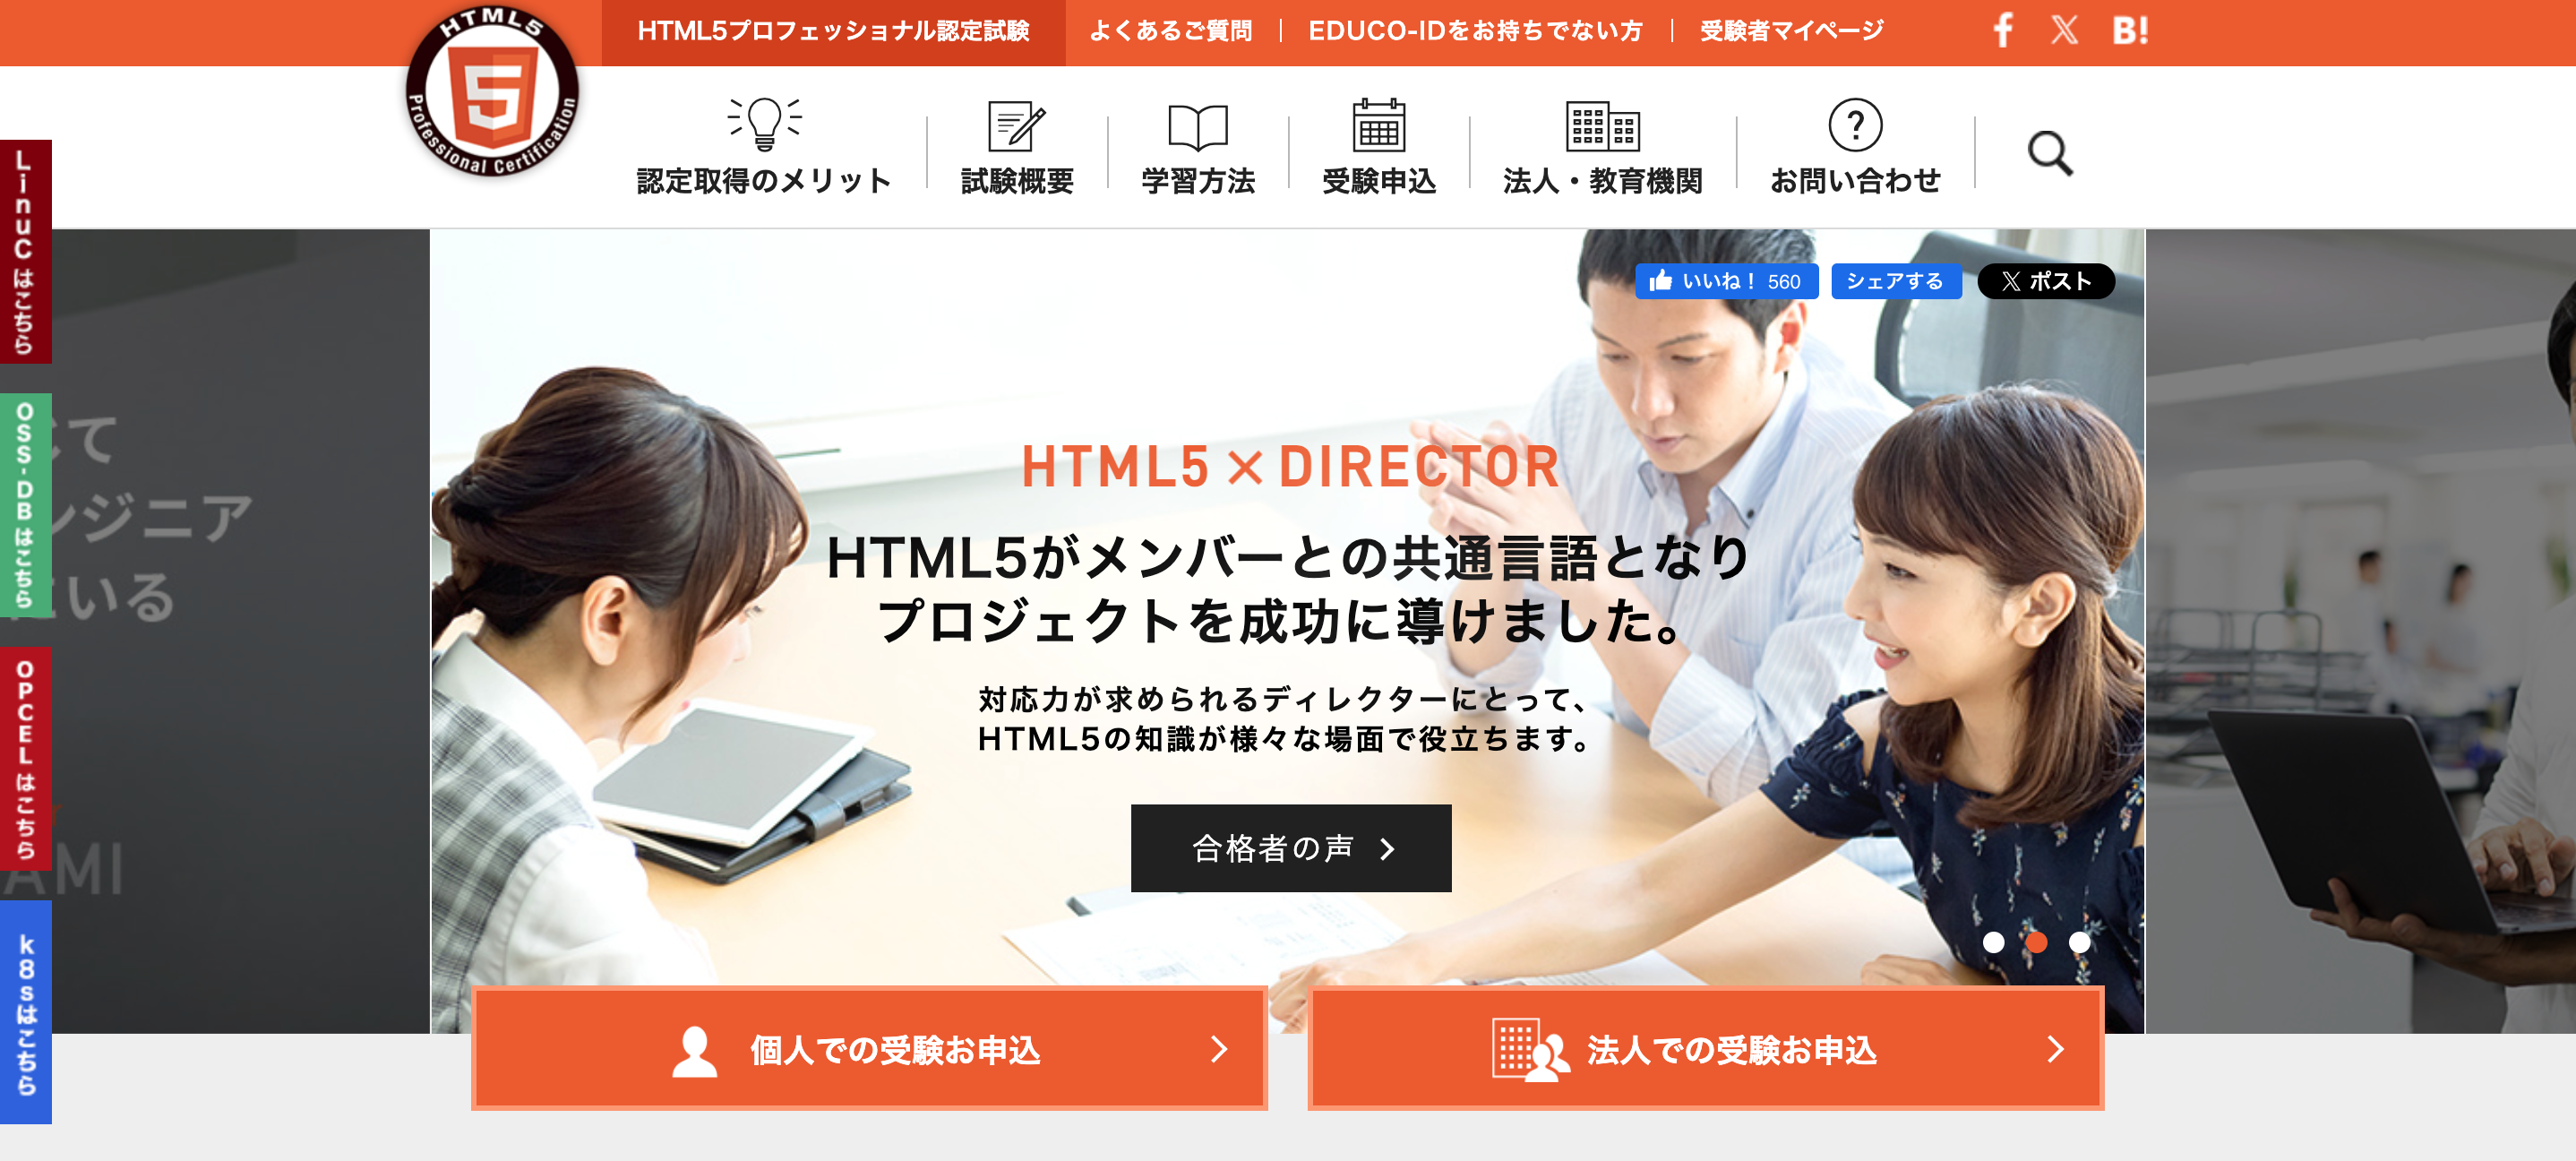 「HTML5プロフェッショナル認定資格」のスクリーンショット